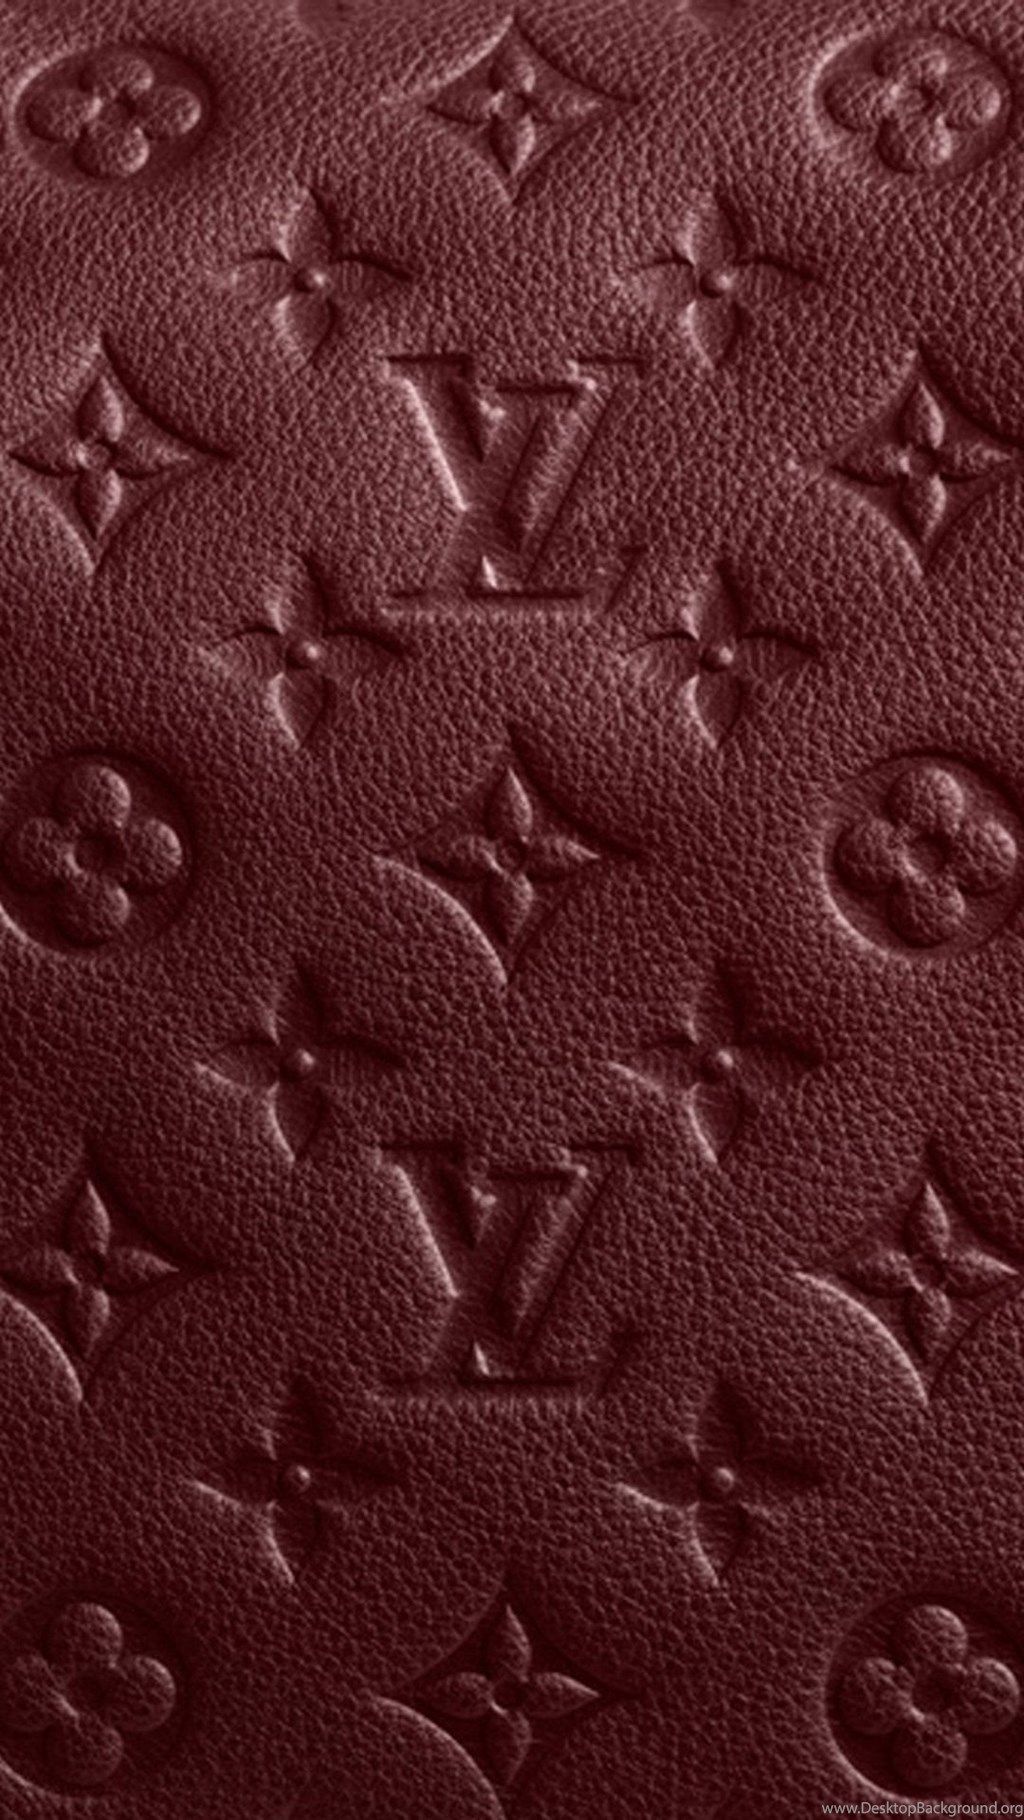 Louis Vuitton Print #iPad #Air #Wallpaper